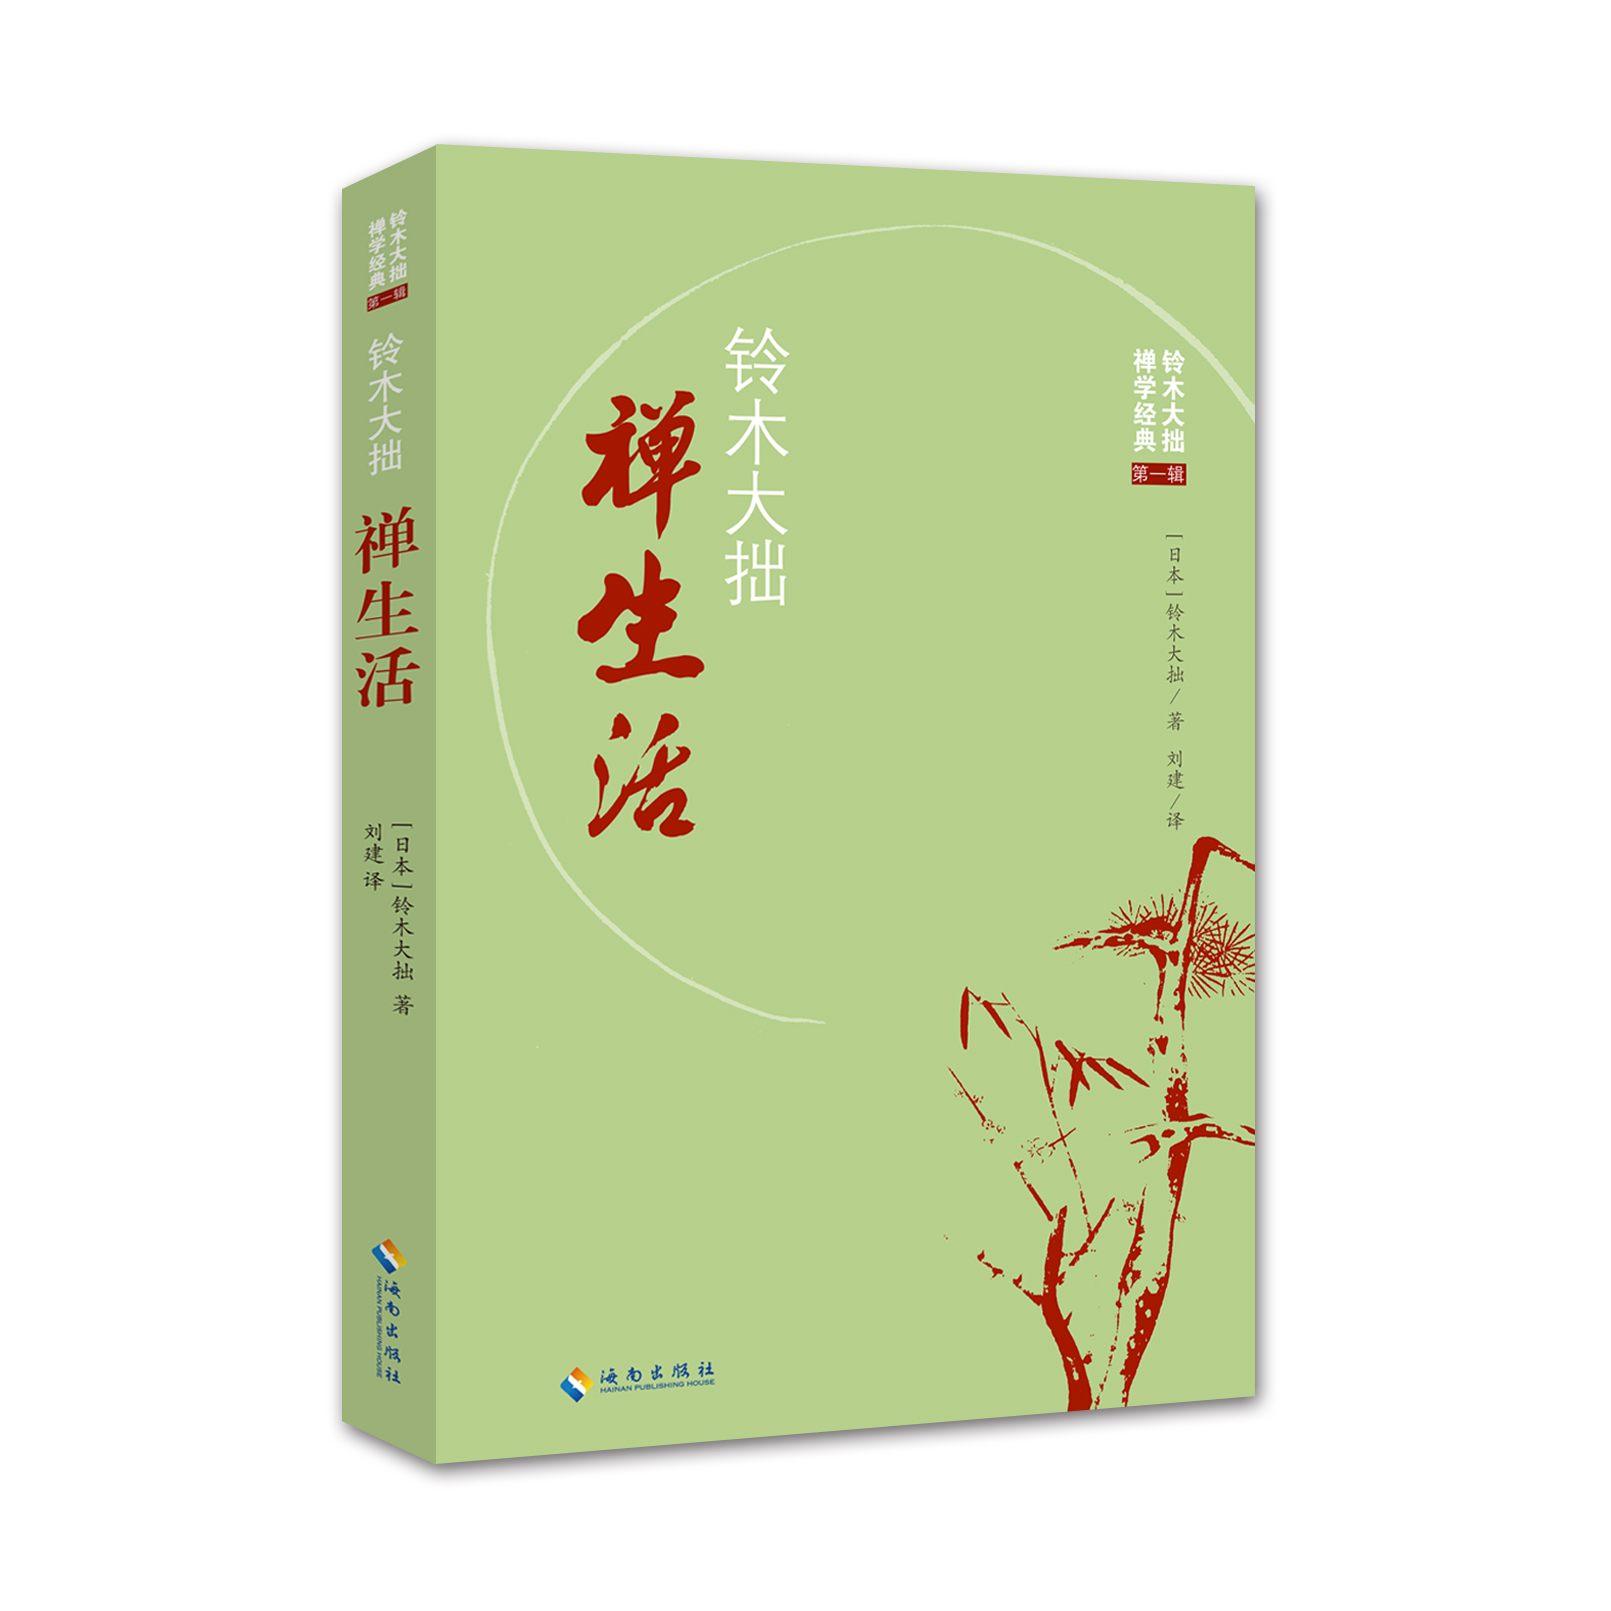 禅学经典《禅生活》于近日出版